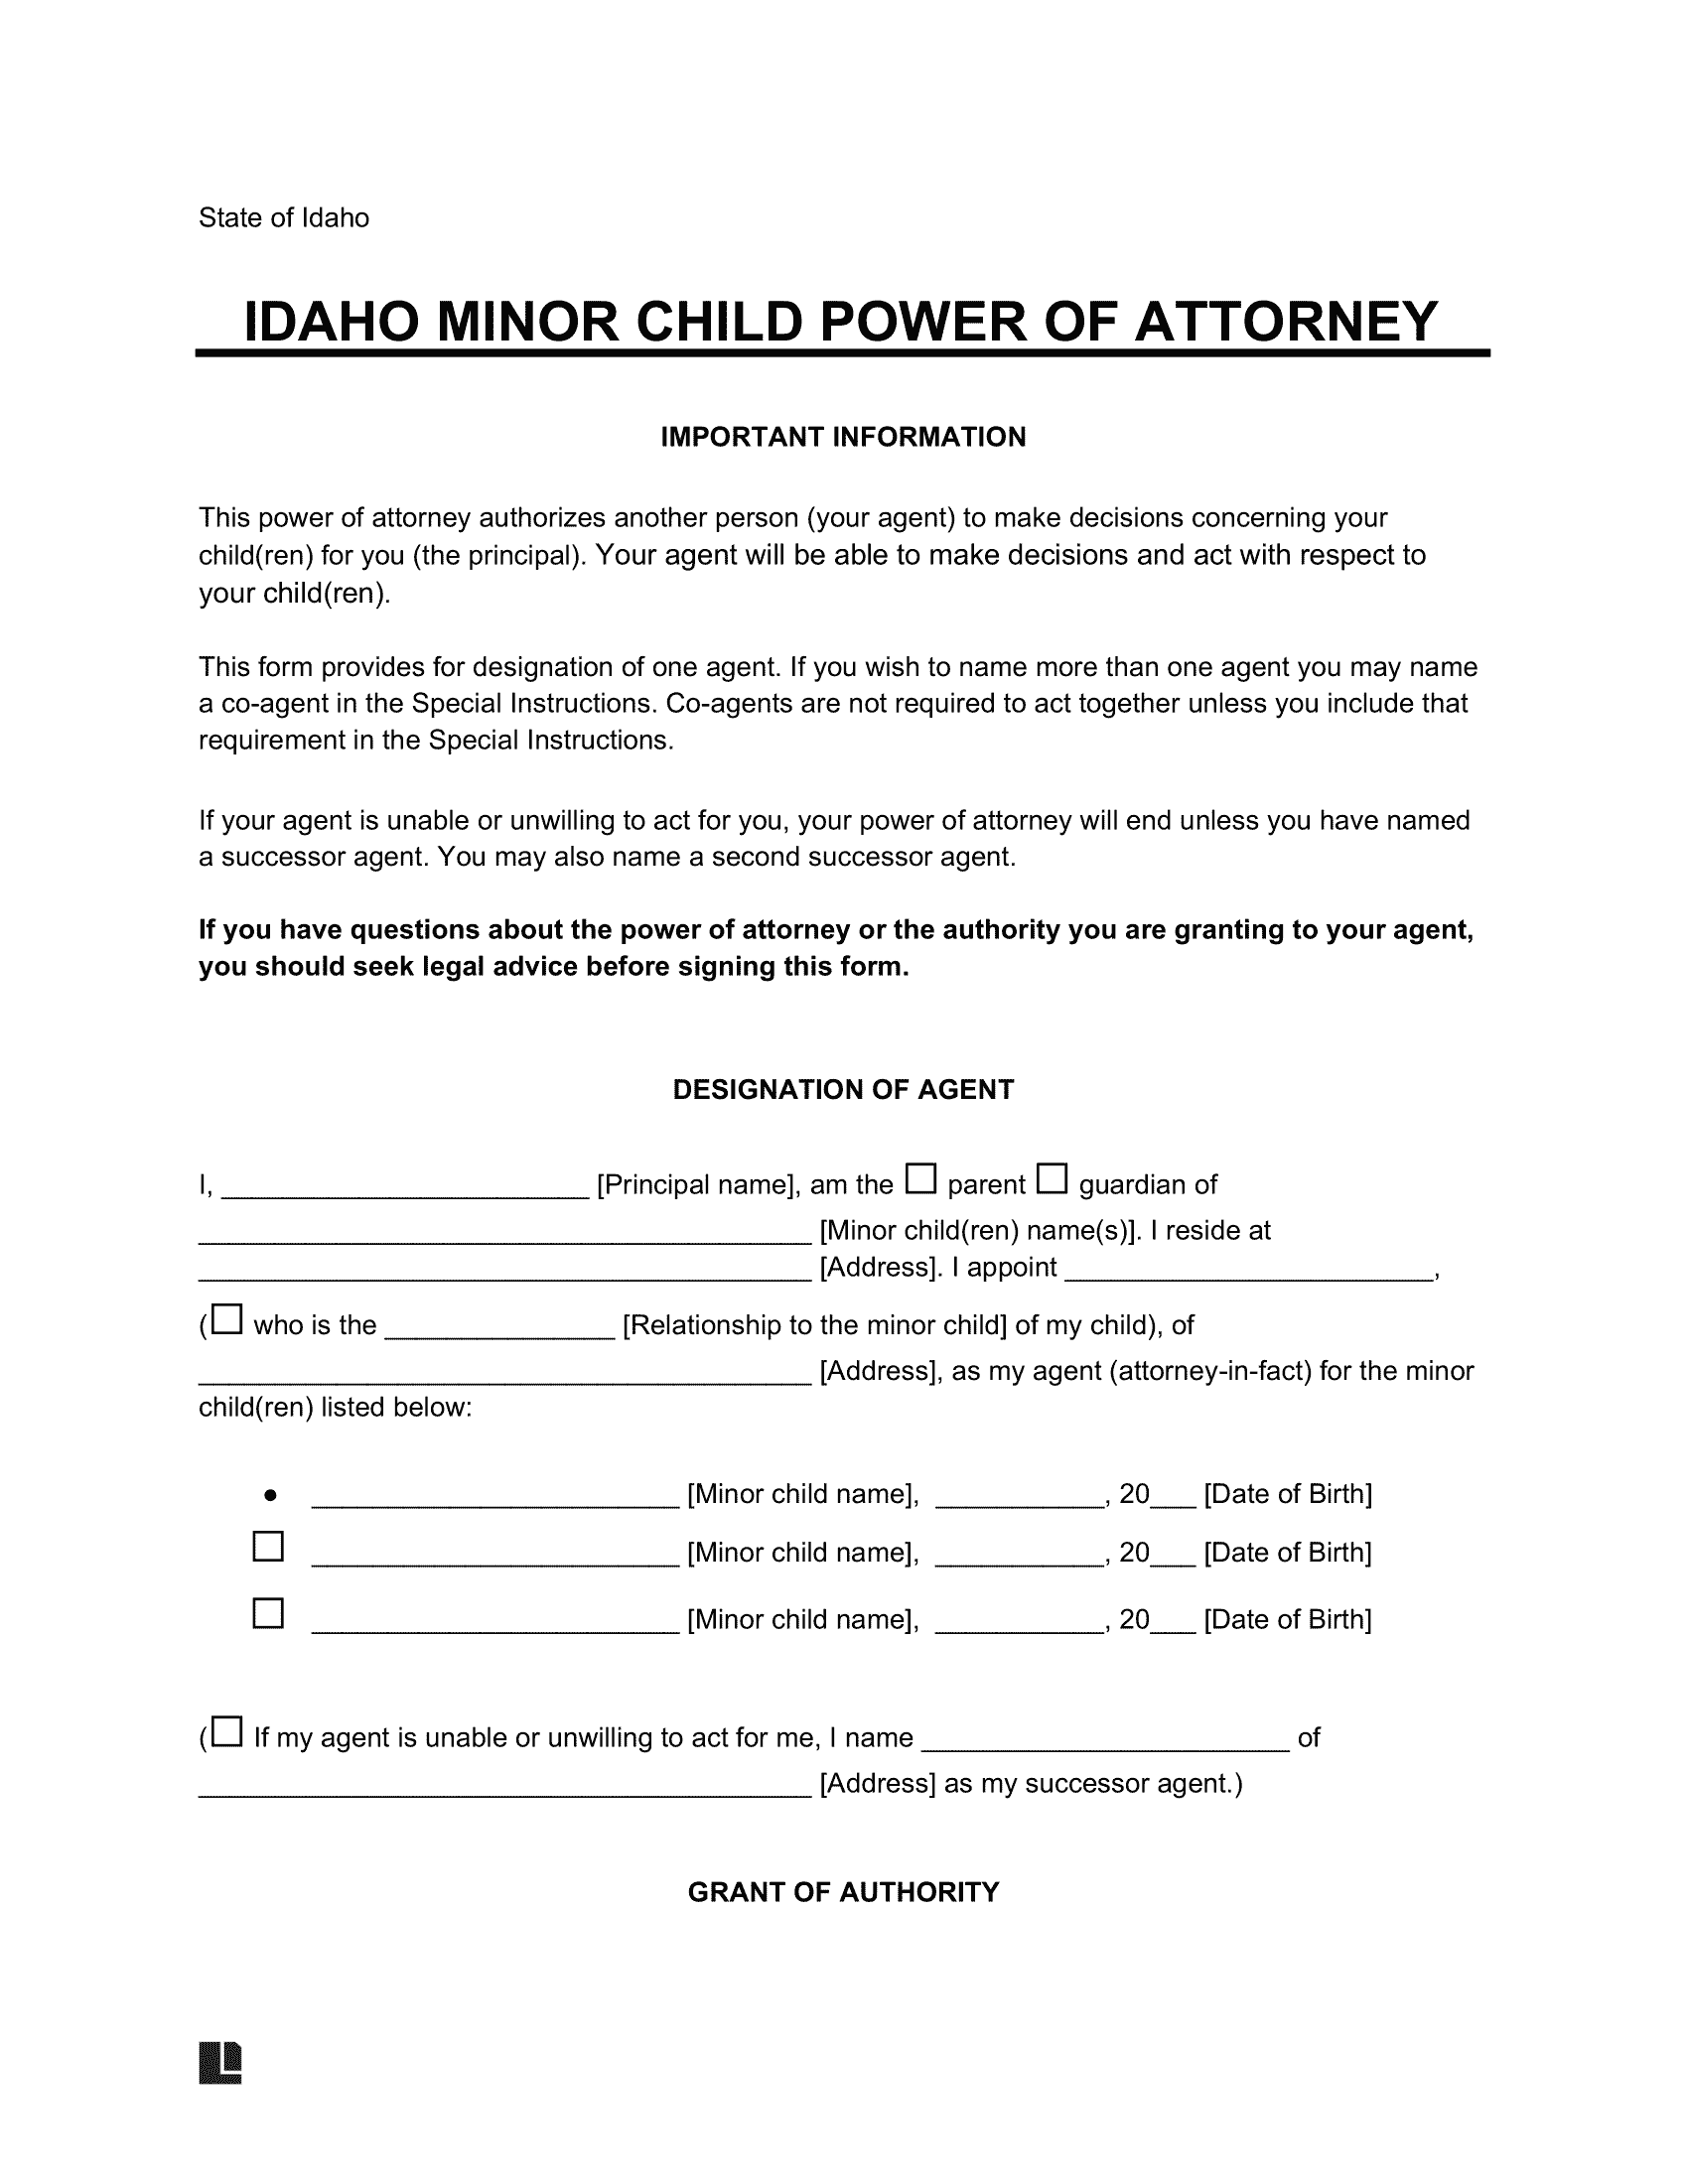 Idaho Minor Child Power of Attorney Form